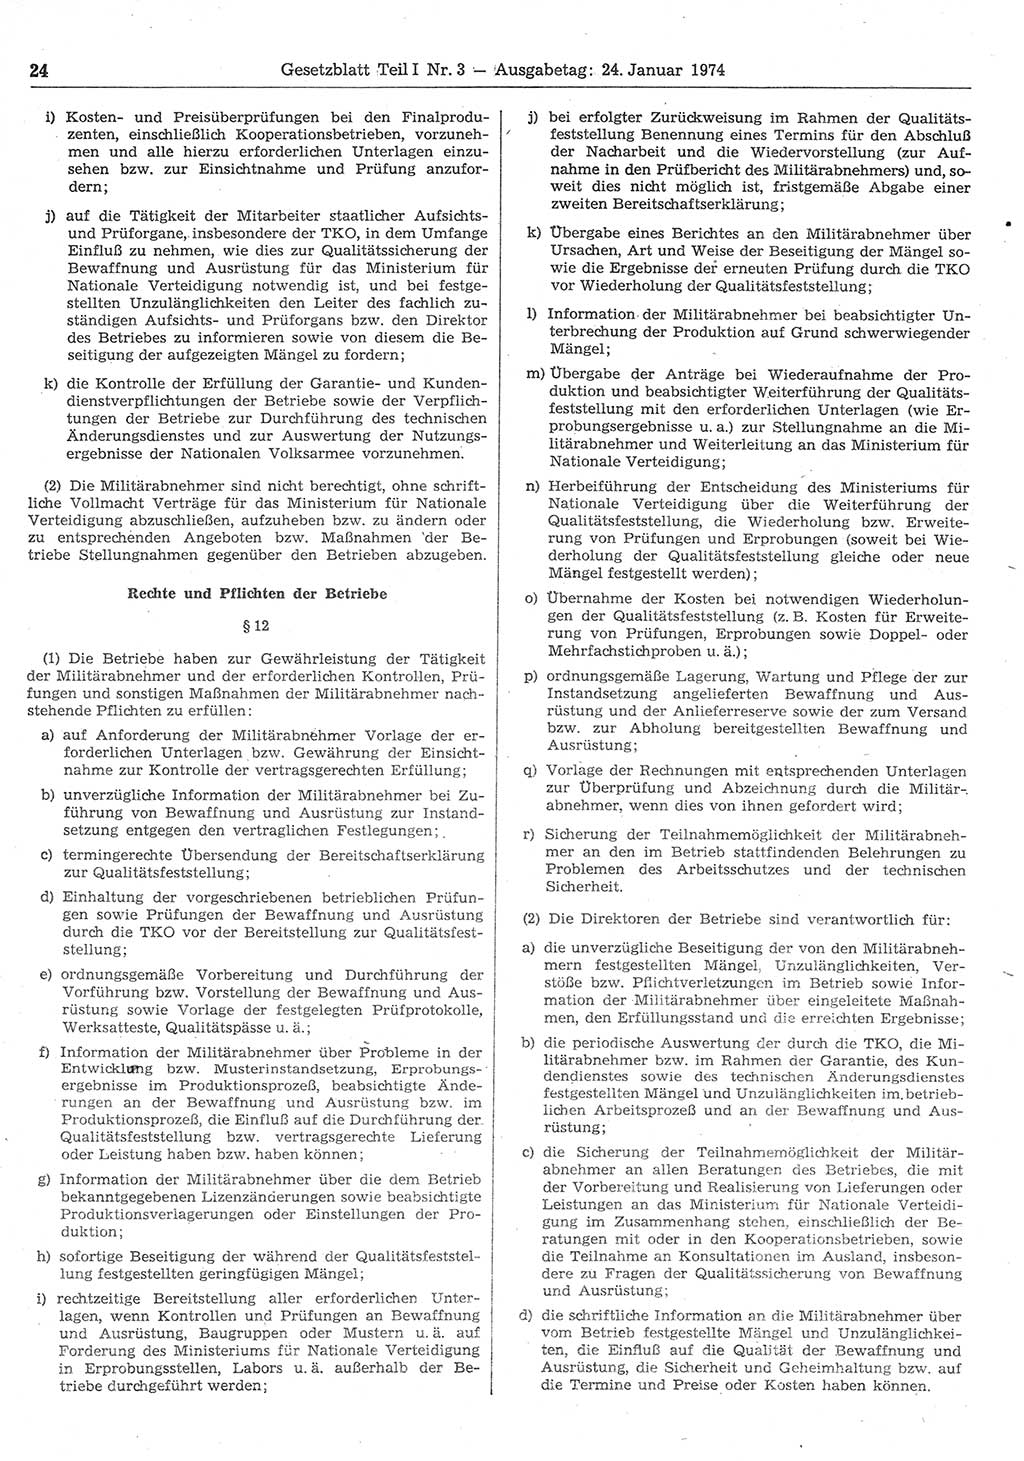 Gesetzblatt (GBl.) der Deutschen Demokratischen Republik (DDR) Teil Ⅰ 1974, Seite 24 (GBl. DDR Ⅰ 1974, S. 24)